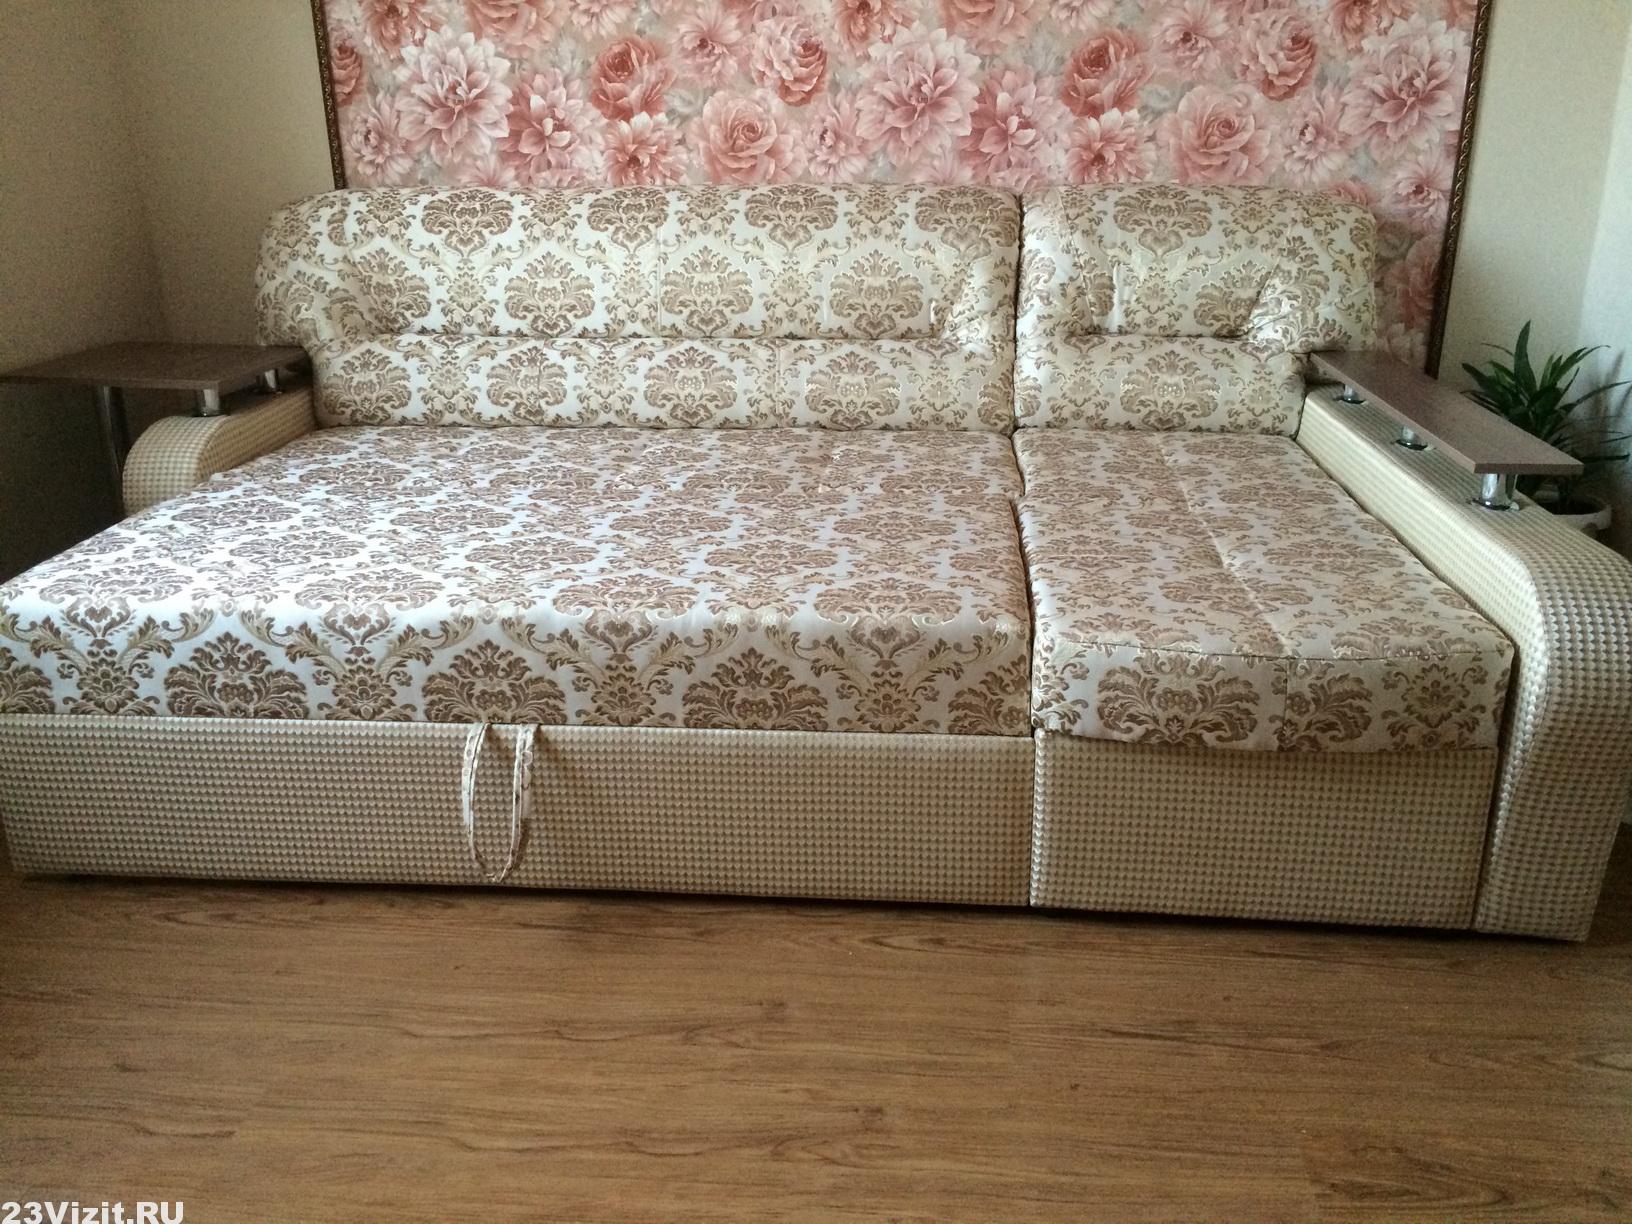 Полный ремонт дивана в Крымске